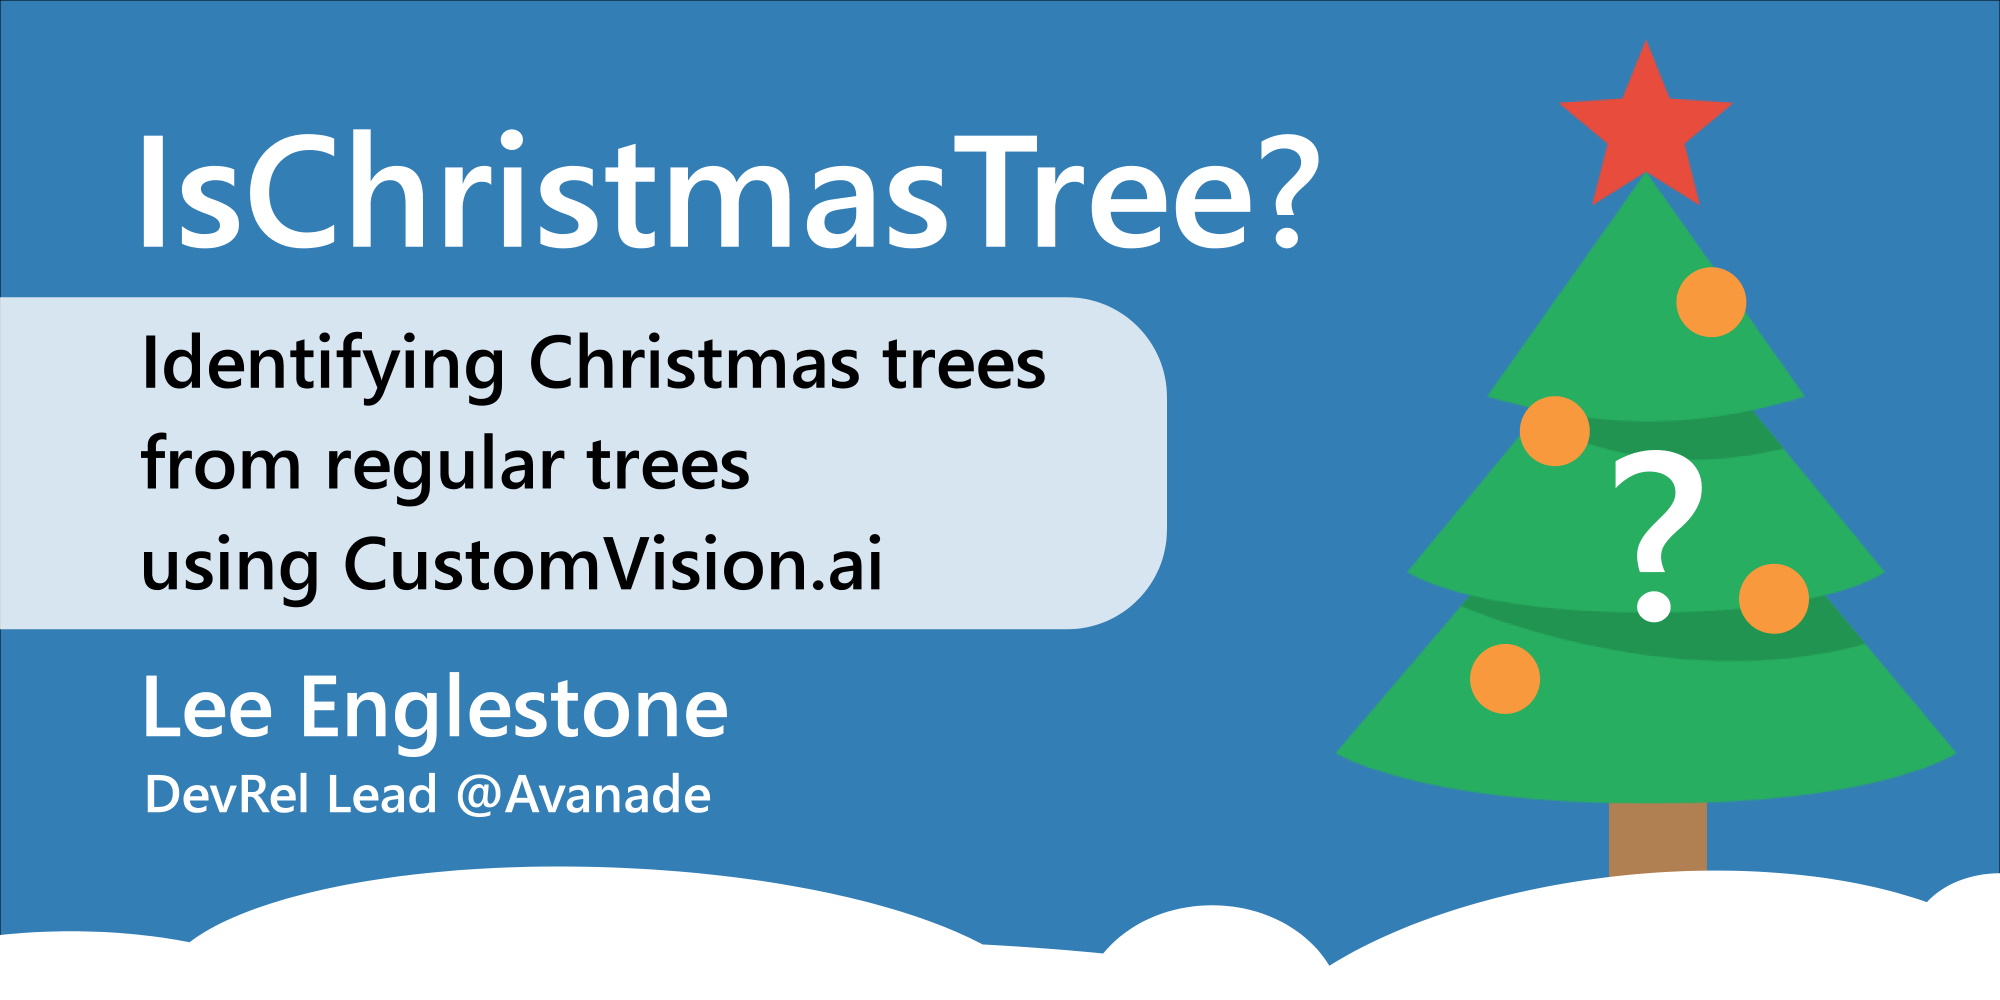 Is Christmas Tree with CustomVision AI? - Festive Tech Calendar 2021